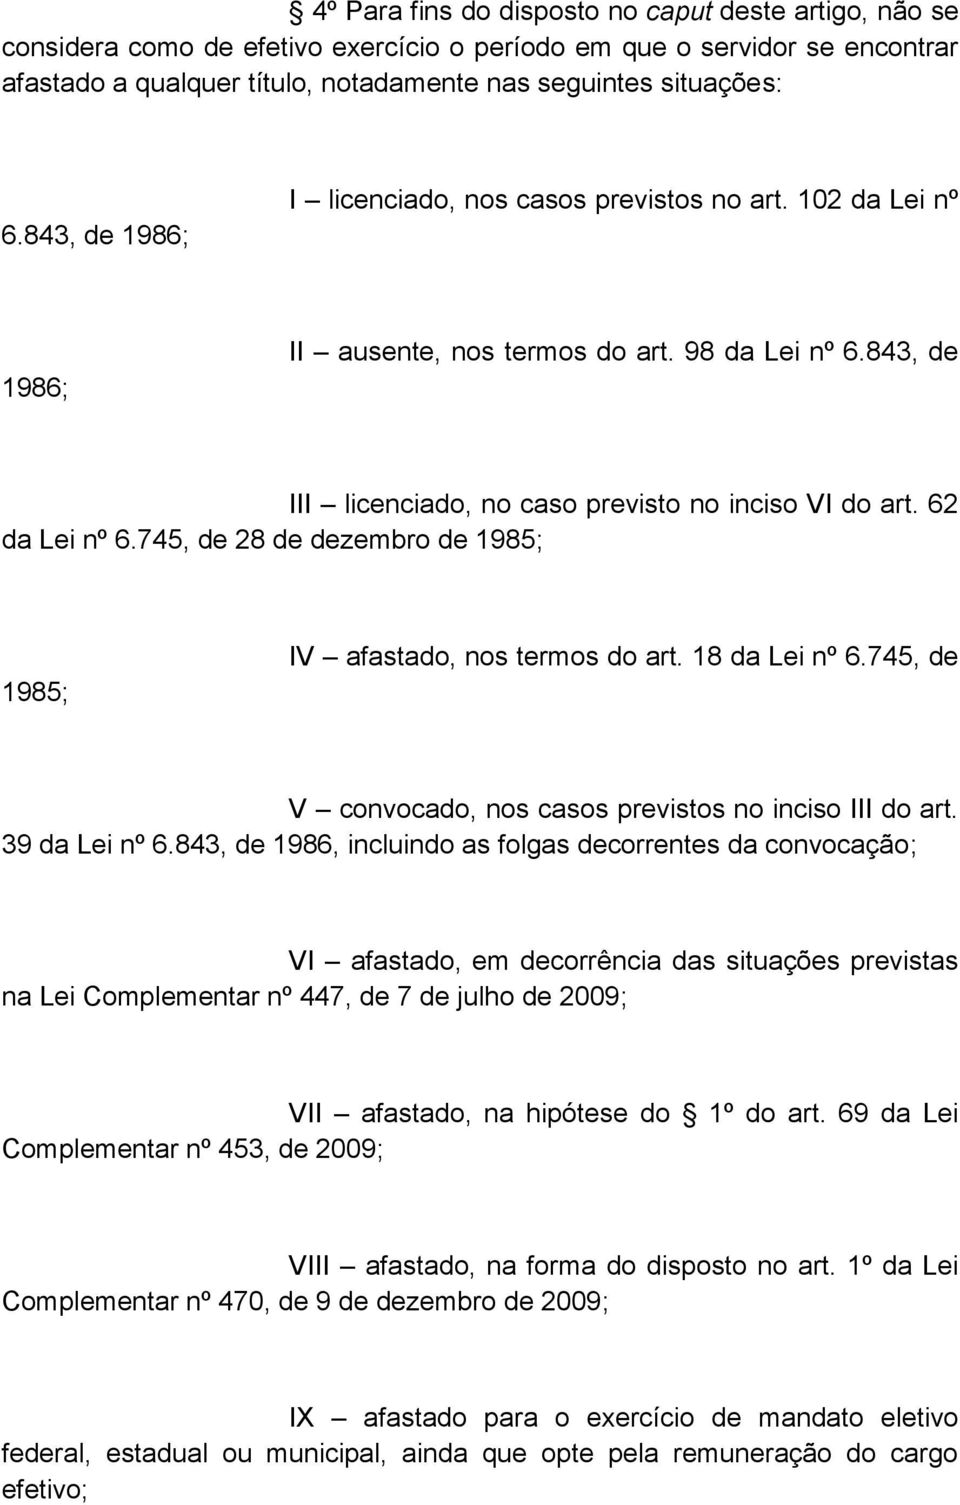 745, de 28 de dezembro de 1985; 1985; IV afastado, nos termos do art. 18 da Lei nº 6.745, de V convocado, nos casos previstos no inciso III do art. 39 da Lei nº 6.